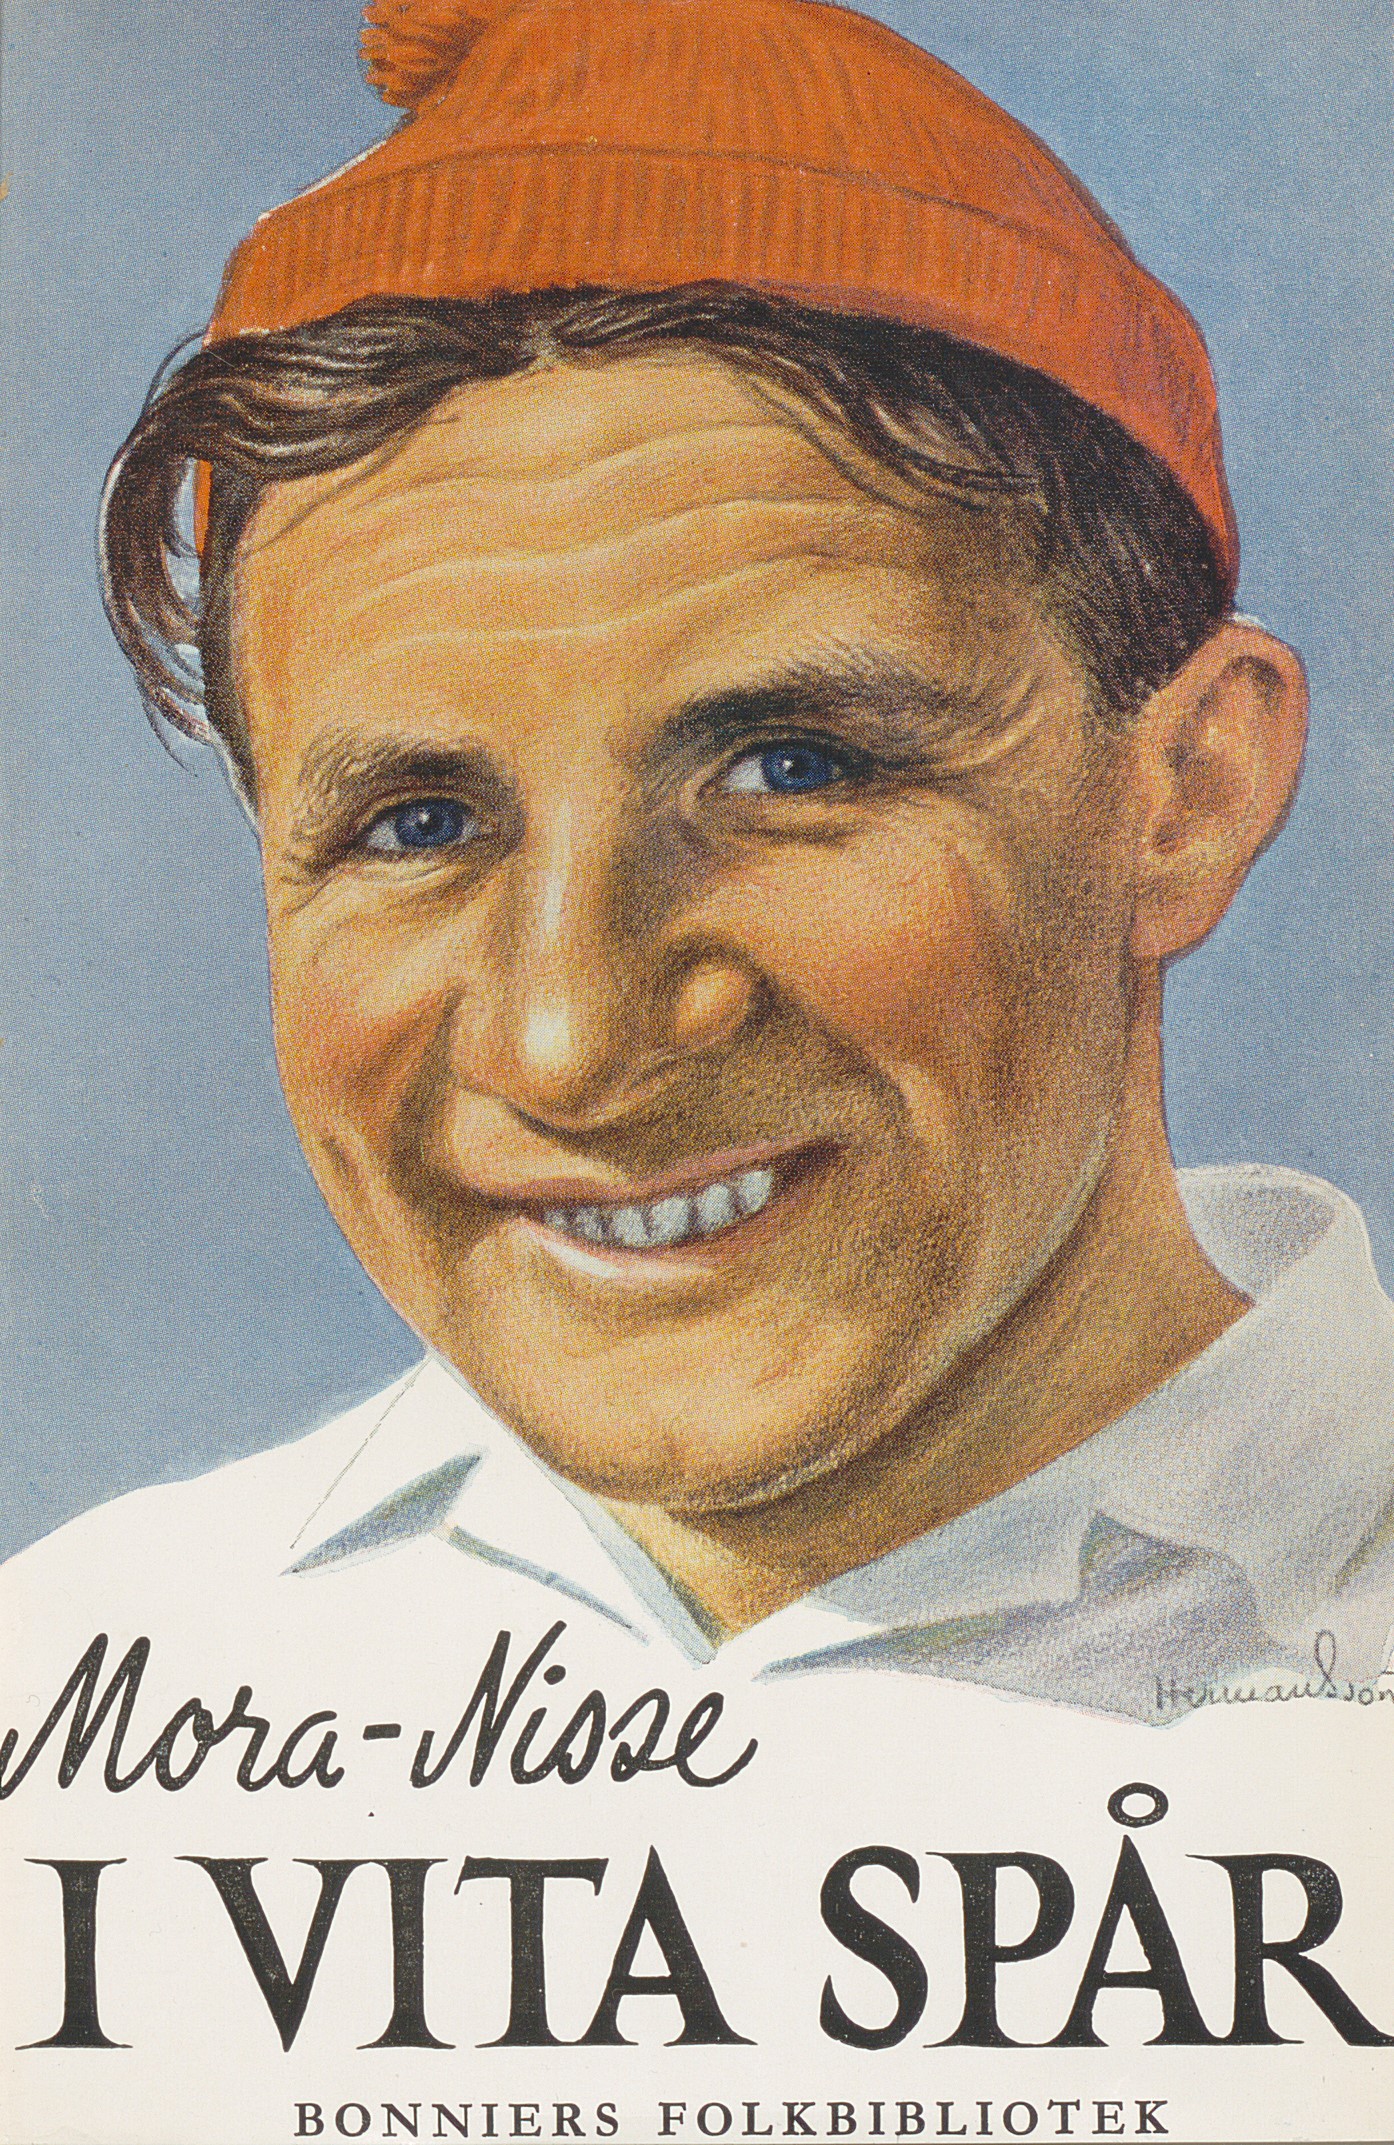 Bokomslag till självbiografin "I vita spår", en leende Mora-Nisse ses i röd mössa och vit tröja.